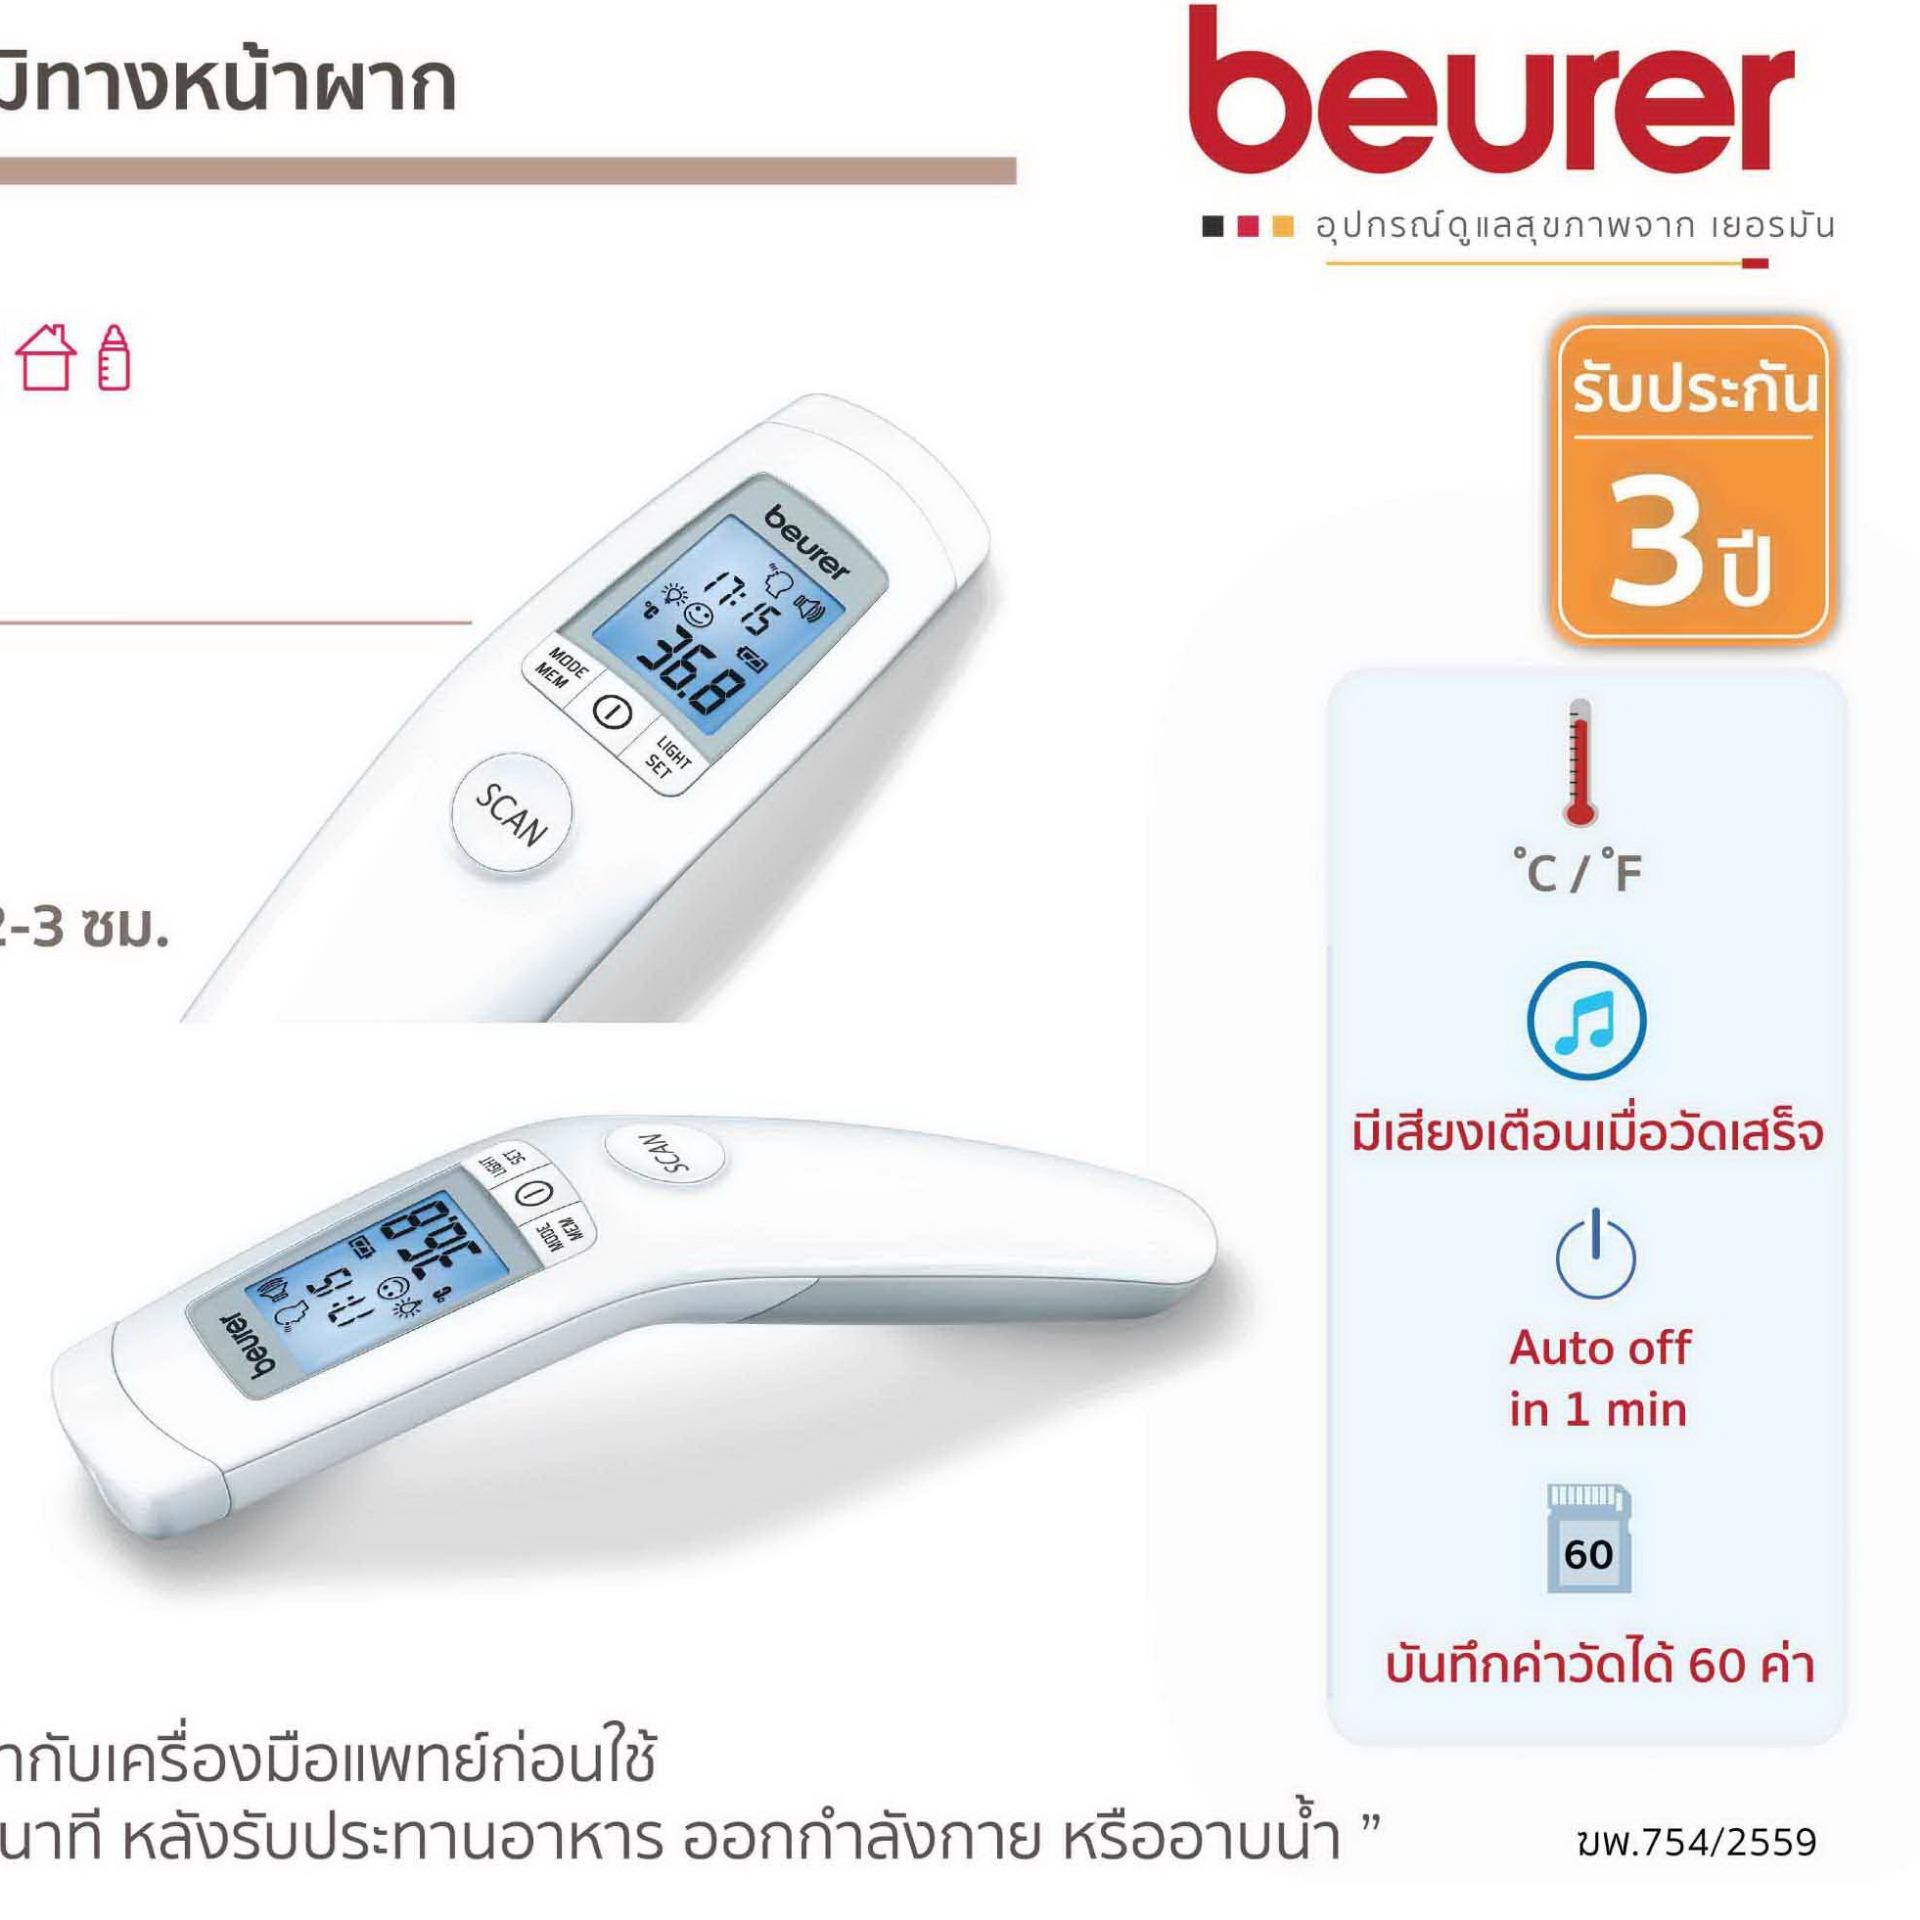 เทอร์โมมิเตอร์วัดไข้ แบบไม่ต้องสัมผัส ระบบอินฟาเรด Beurer รุ่น FT90 Beurer Non-contact Clinical Thermometer